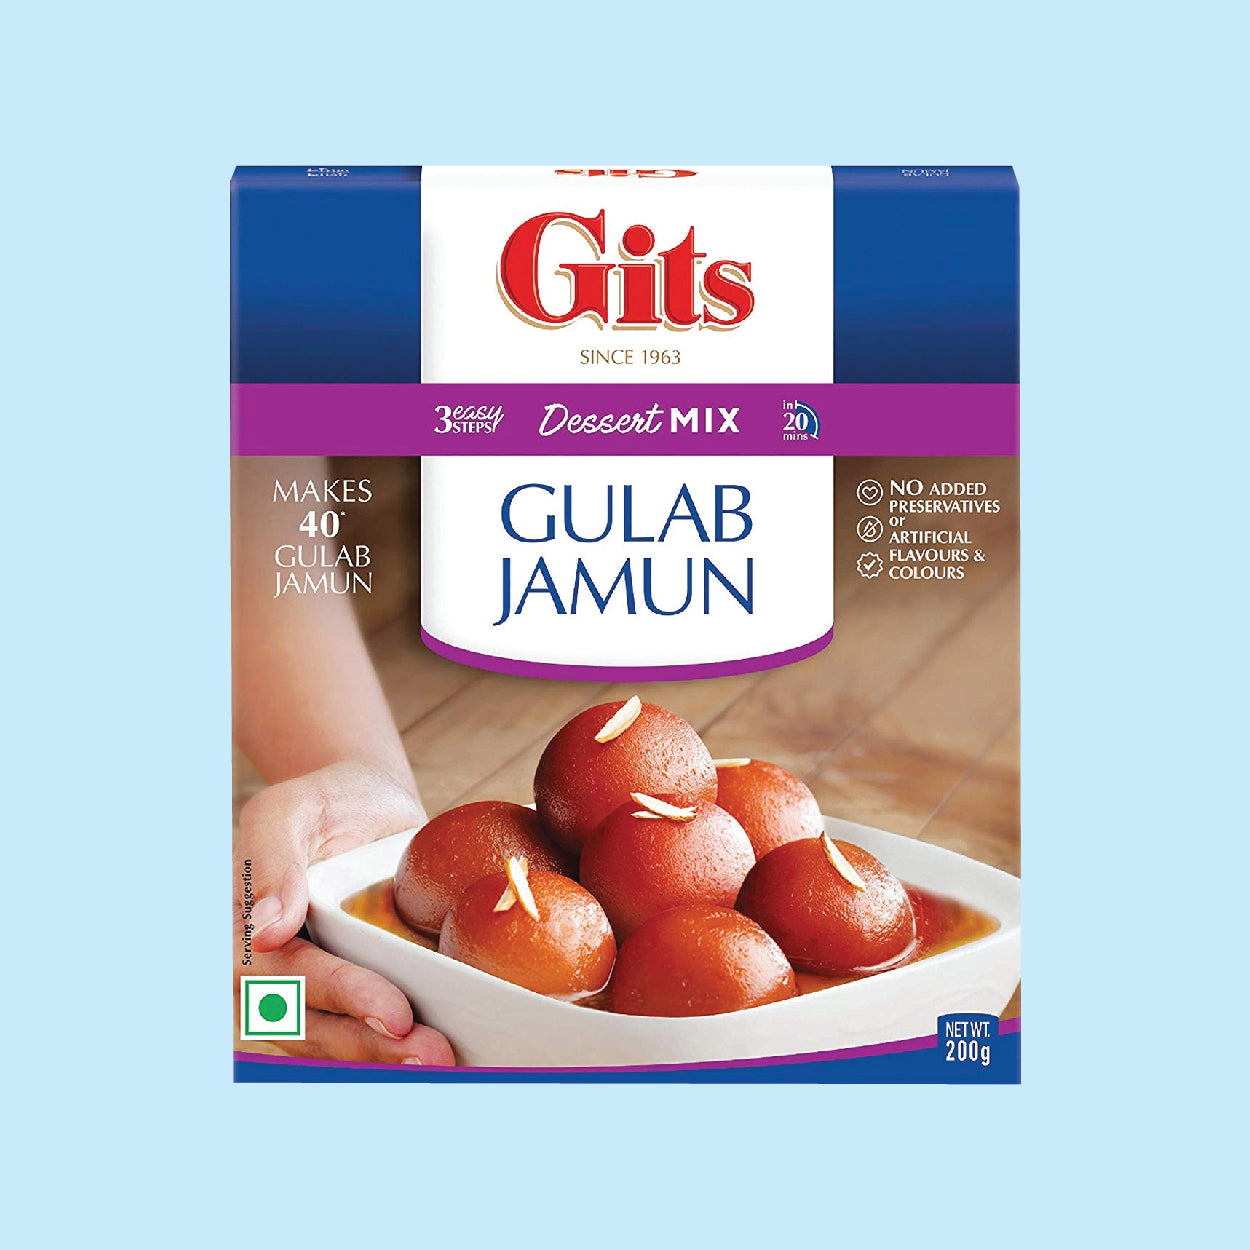 Gits Gulab Jamun Mix 500g